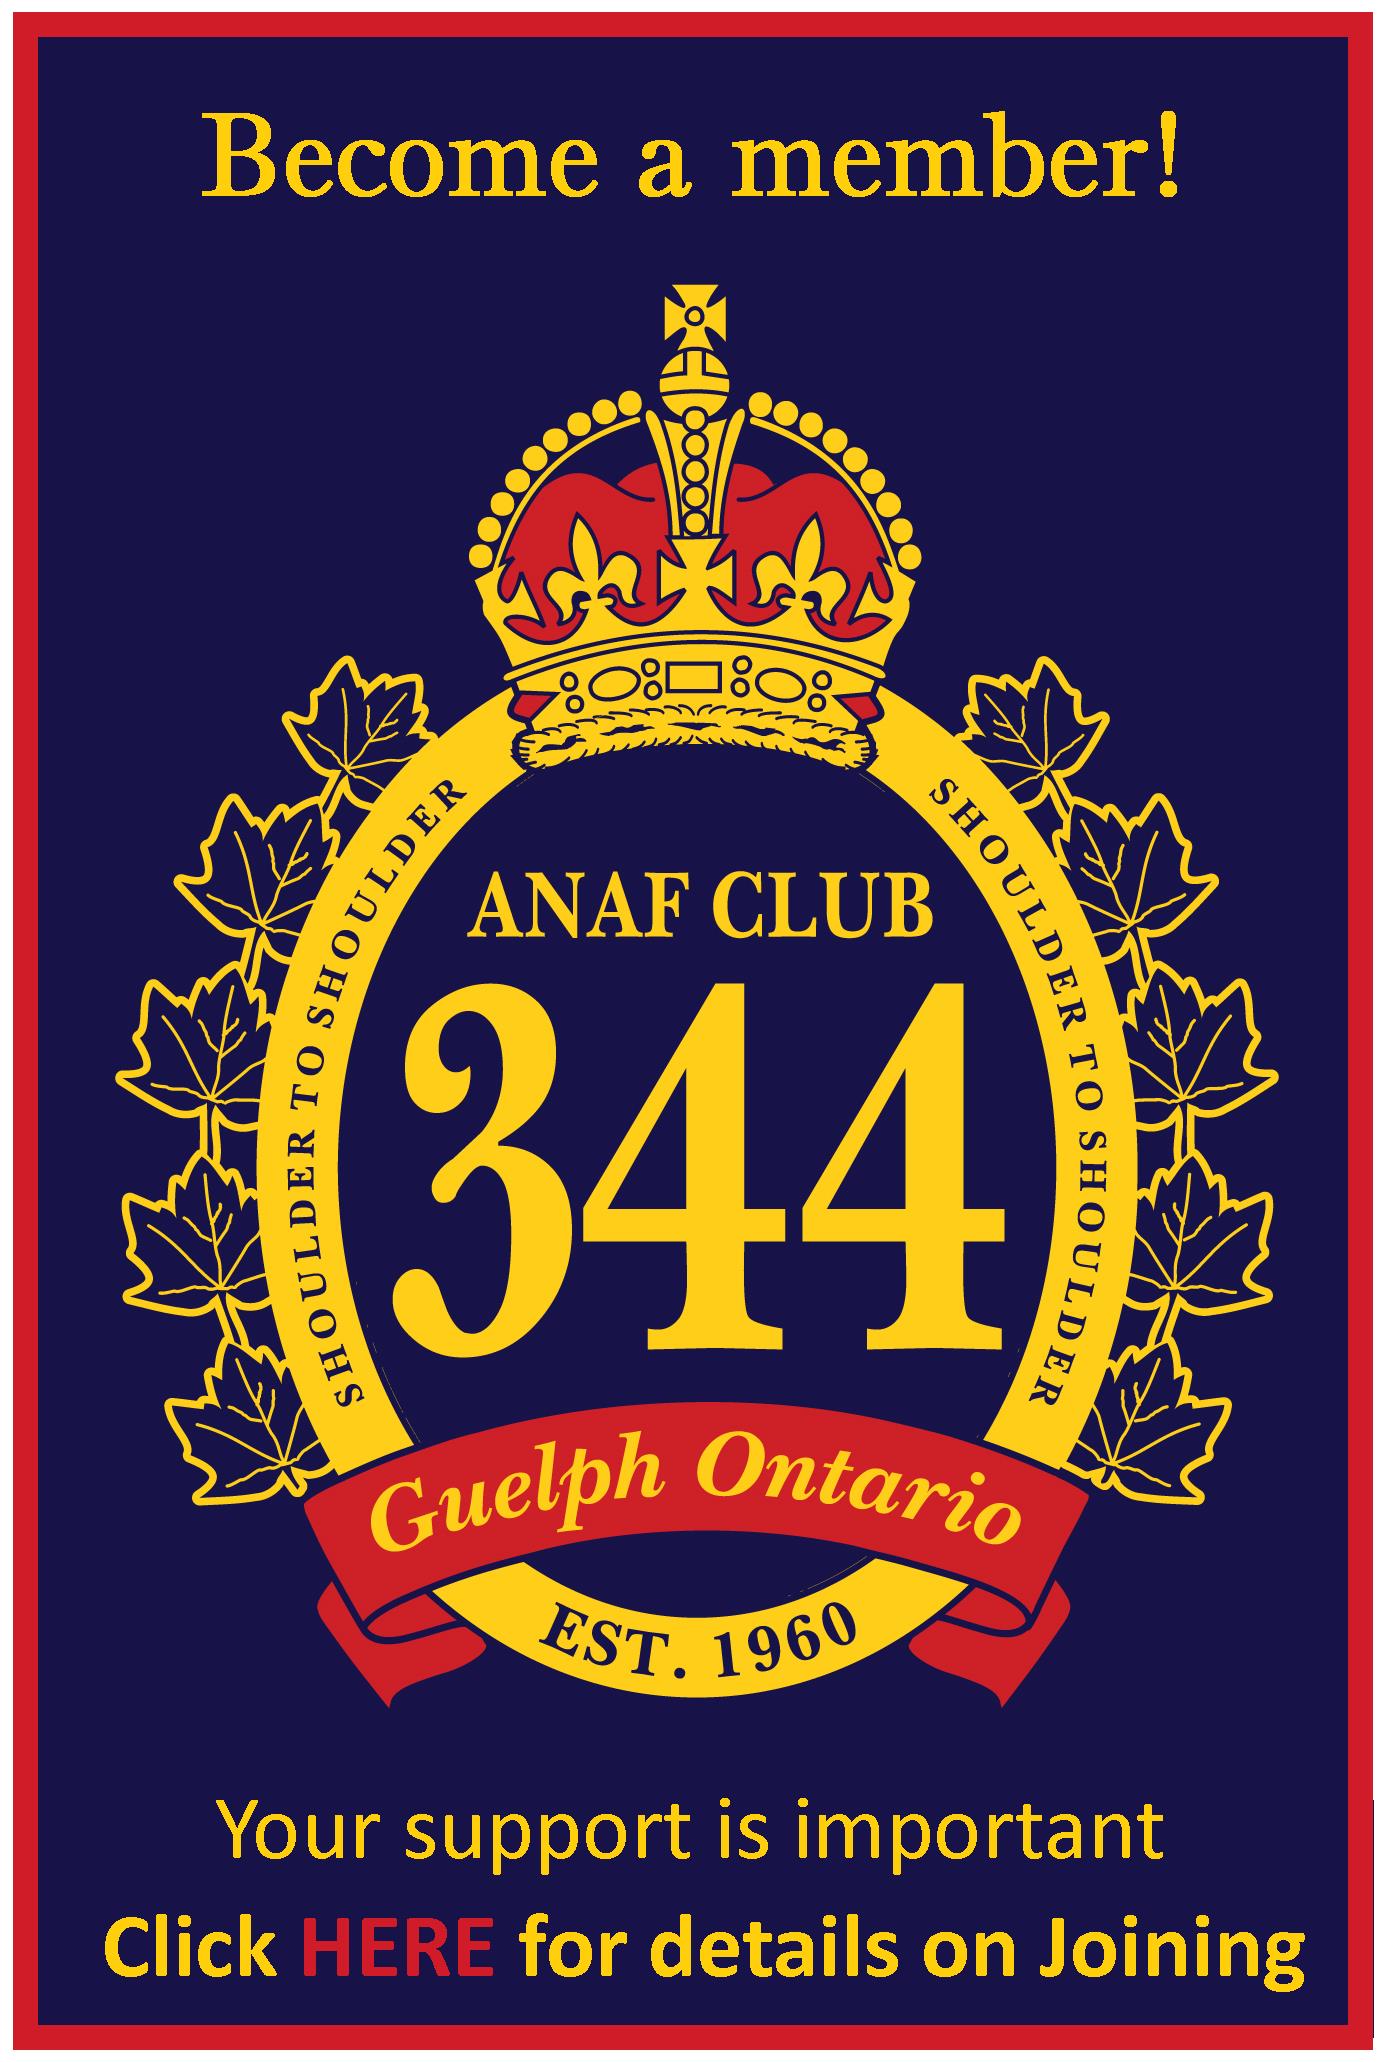 ANAF Club 344